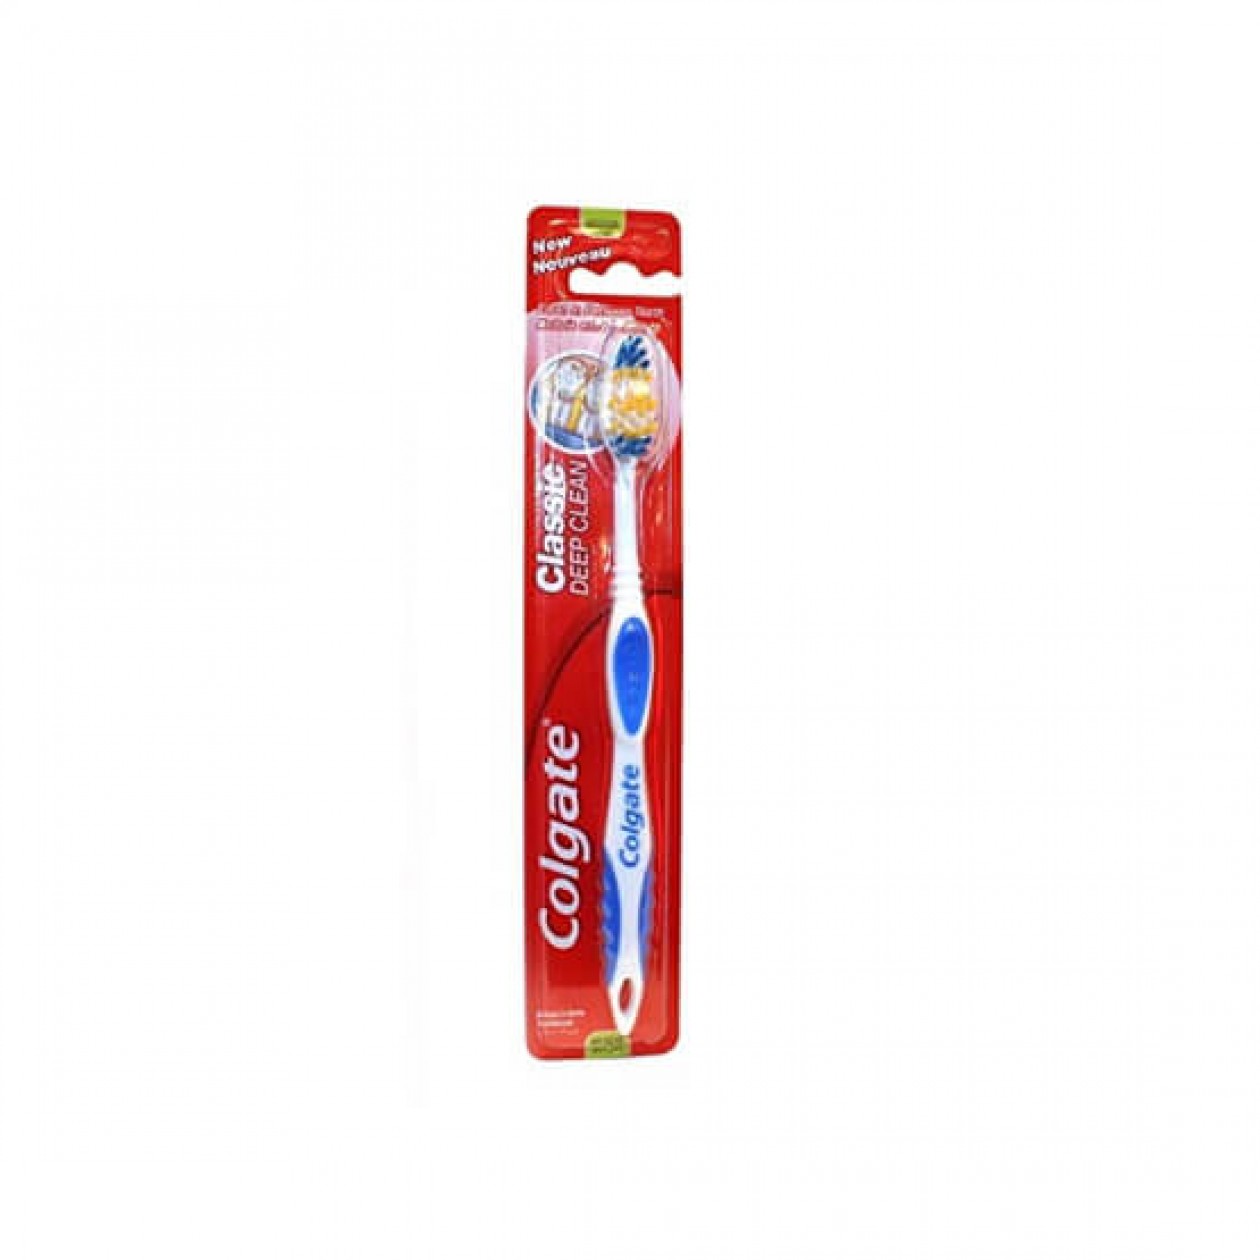 Colgate Toothbrush Deep Clean